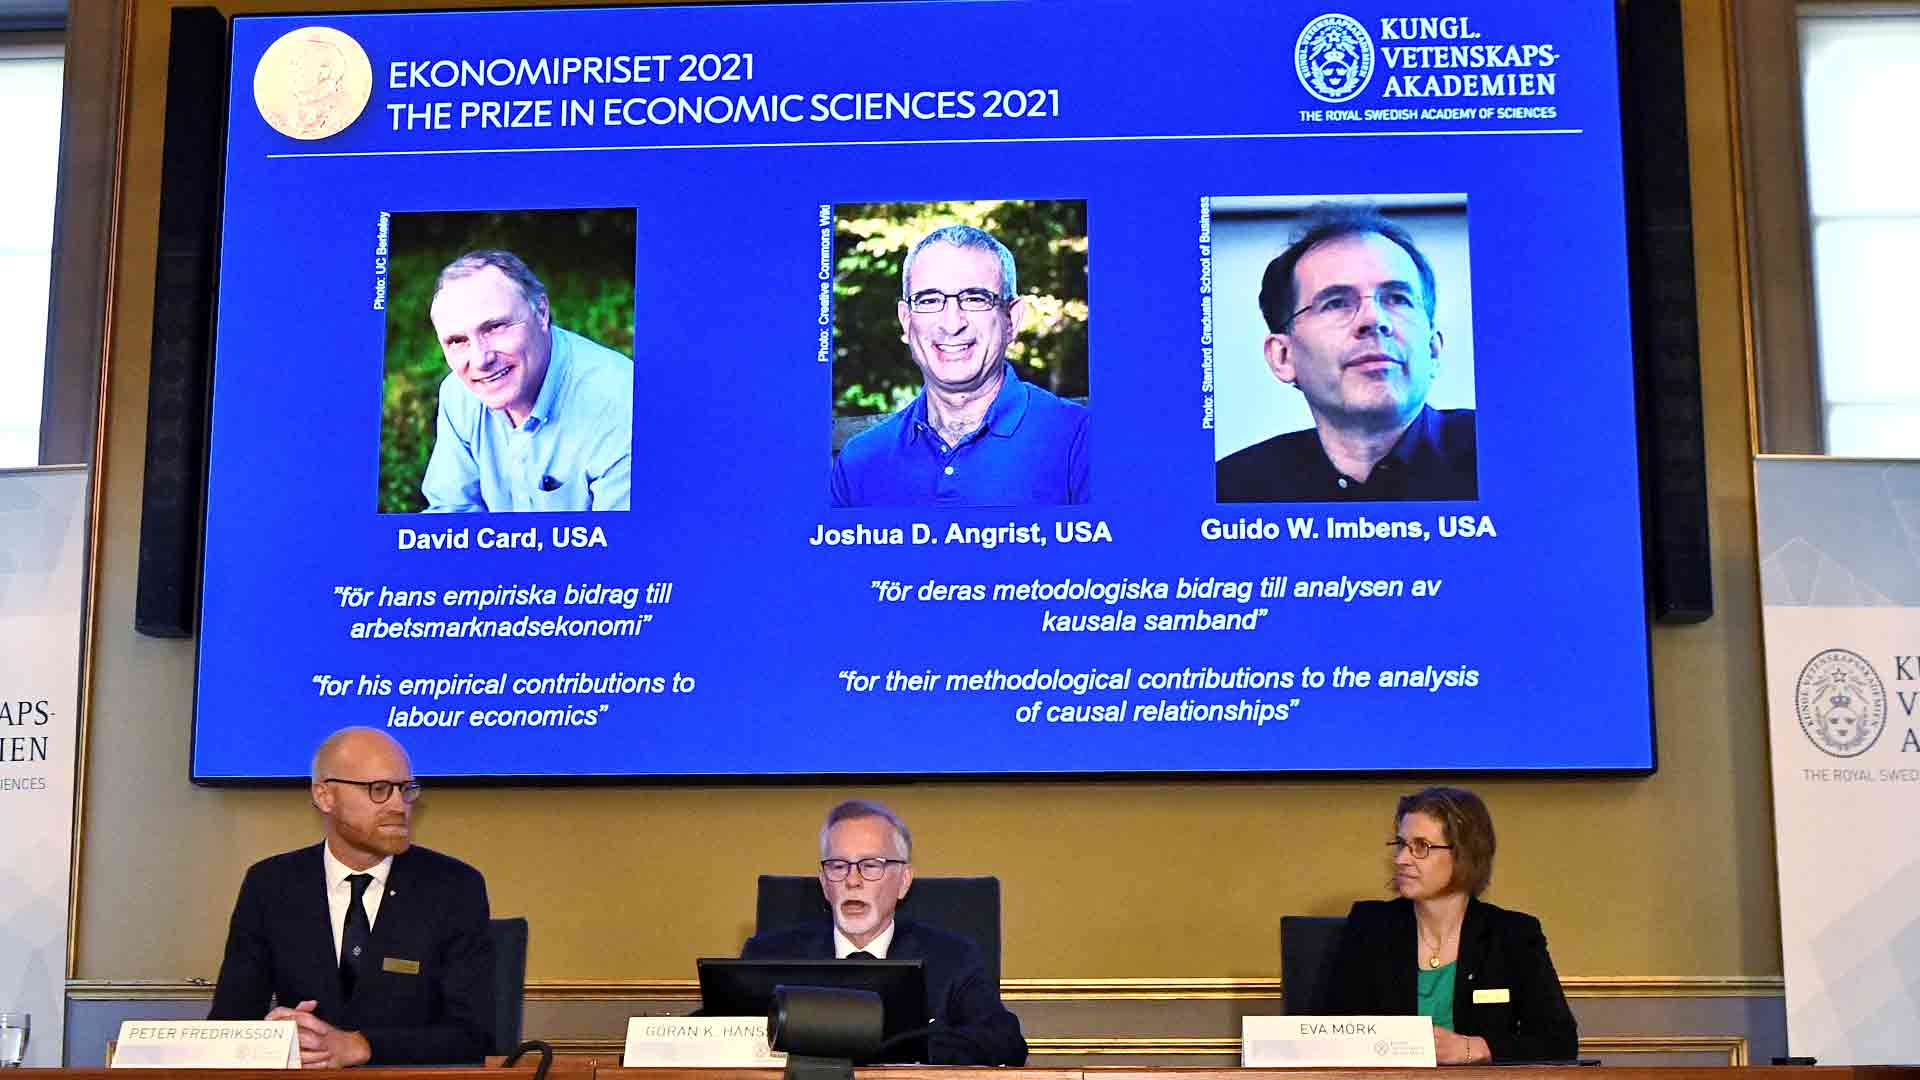 Profesor experto comenta acerca de los ganadores del Premio Nobel de economía 2021